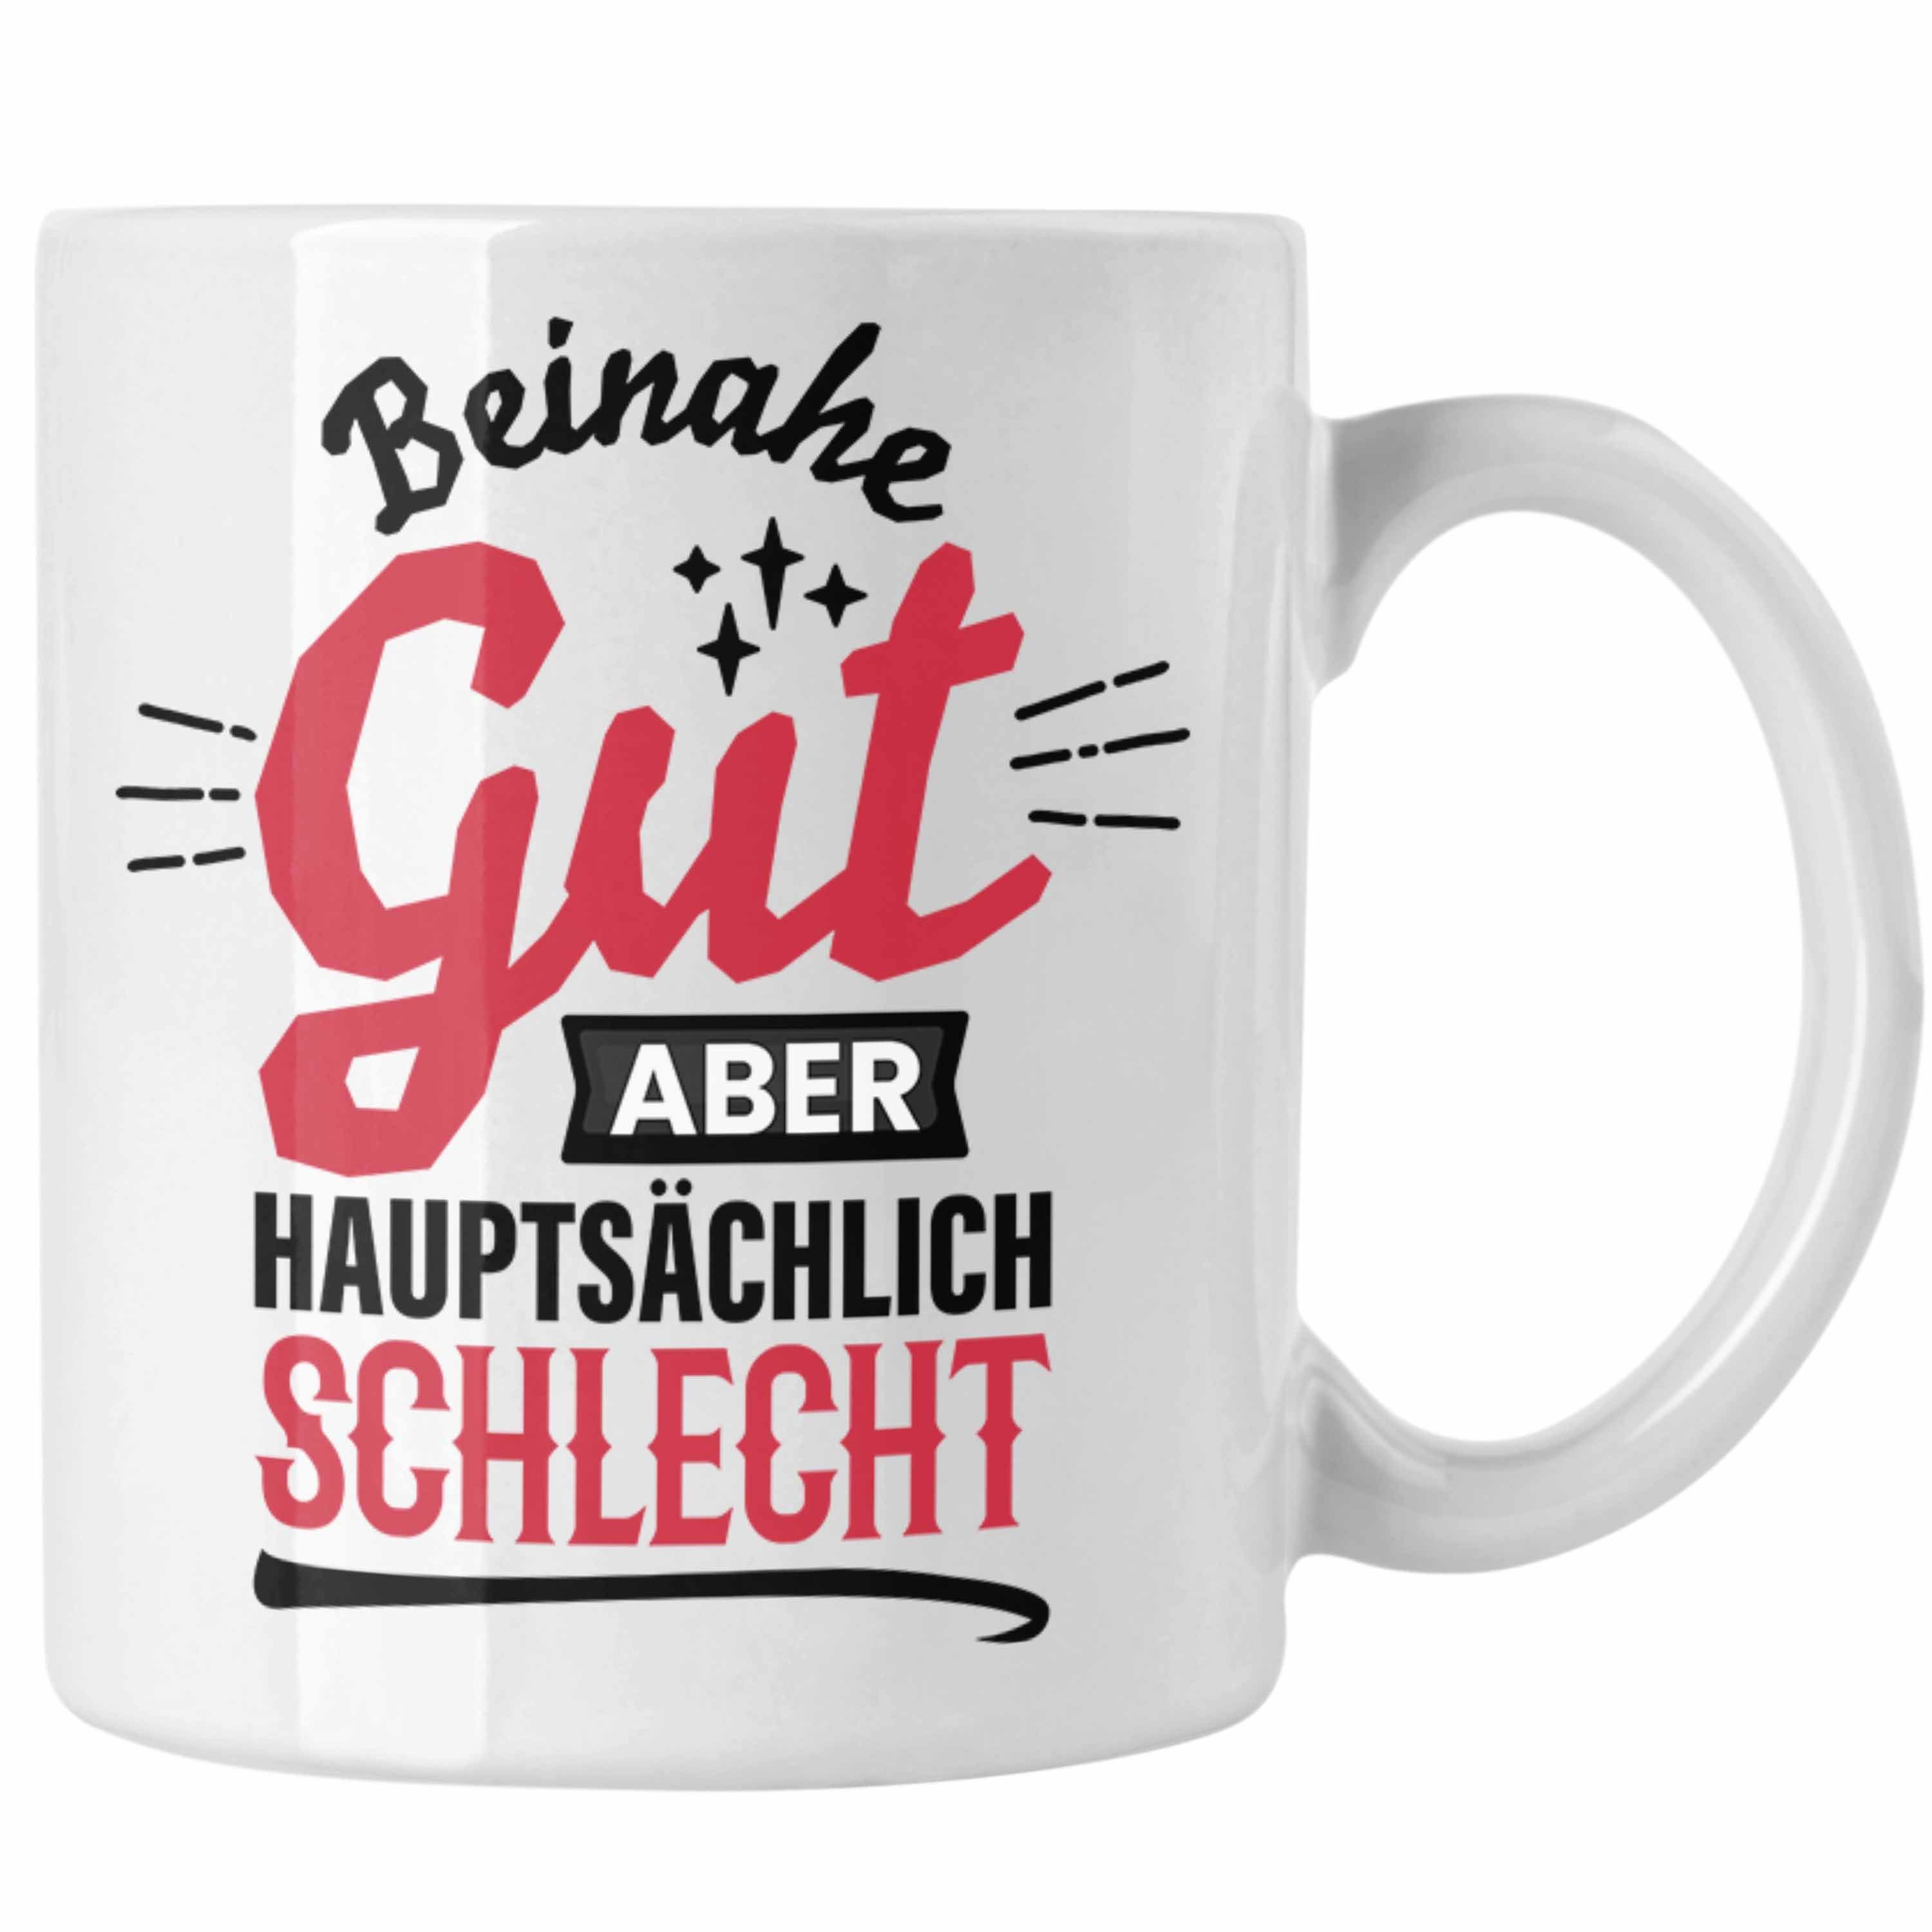 Trendation Tasse Lustiger Spruch Kaffee-Becher Tasse Beinahe Gut Aber Hauptsächlich Sch Weiss | Teetassen